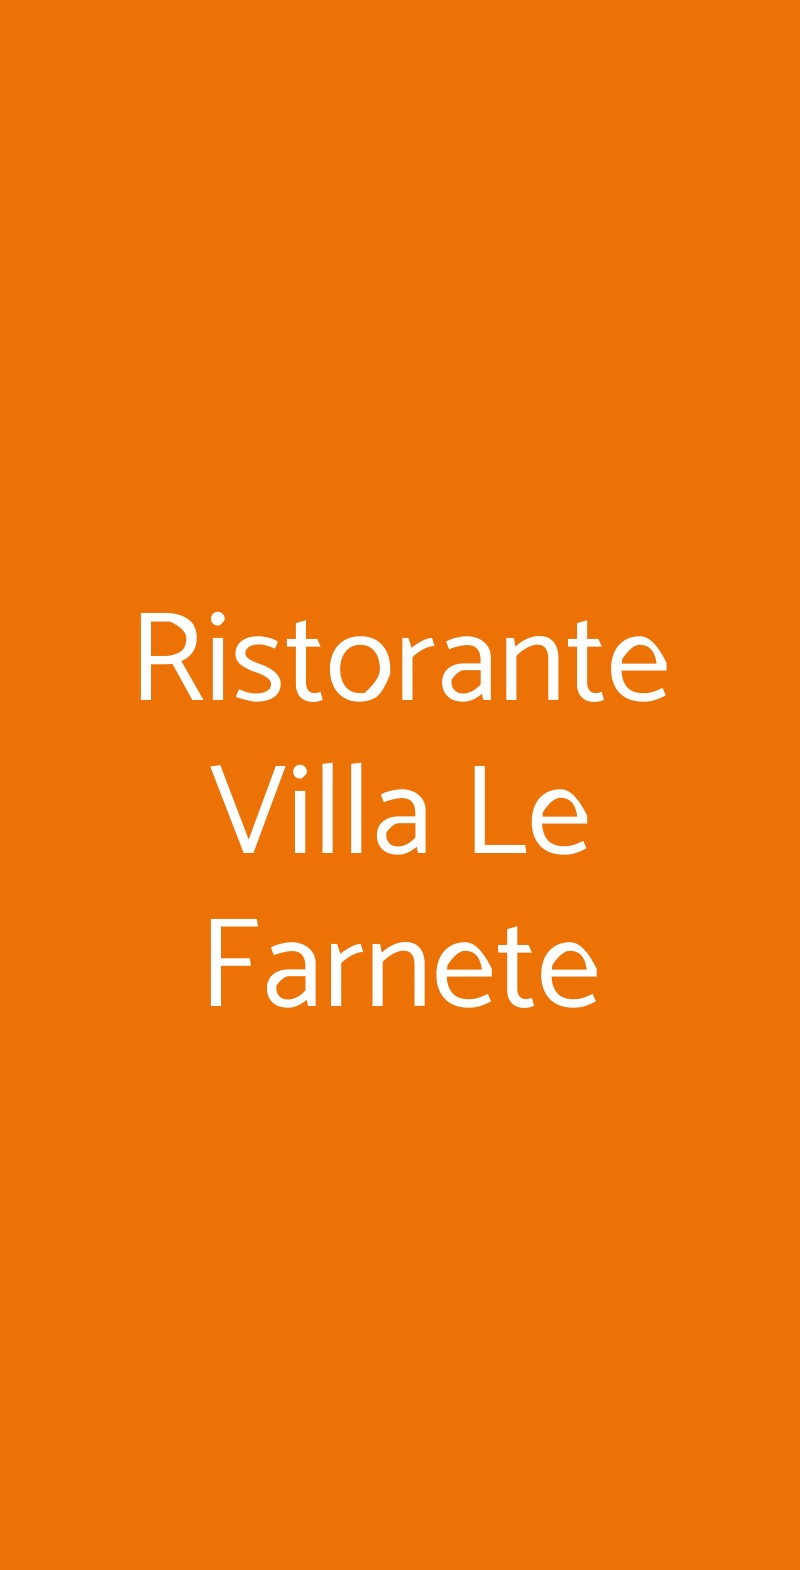 Ristorante Villa Le Farnete Carmignano menù 1 pagina